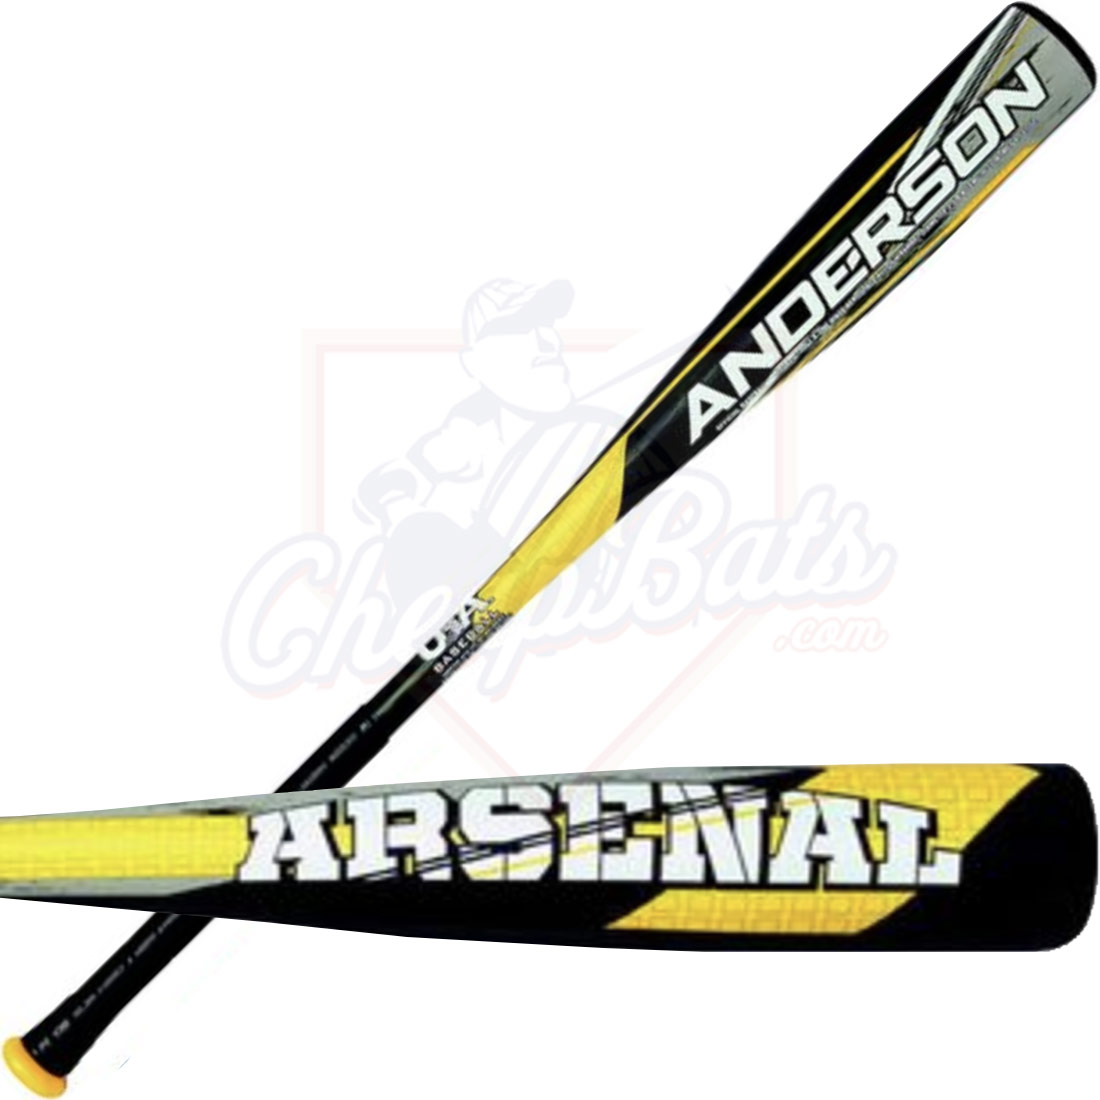 2020 Anderson Arsenal Youth USA Baseball Bat -10oz 015042